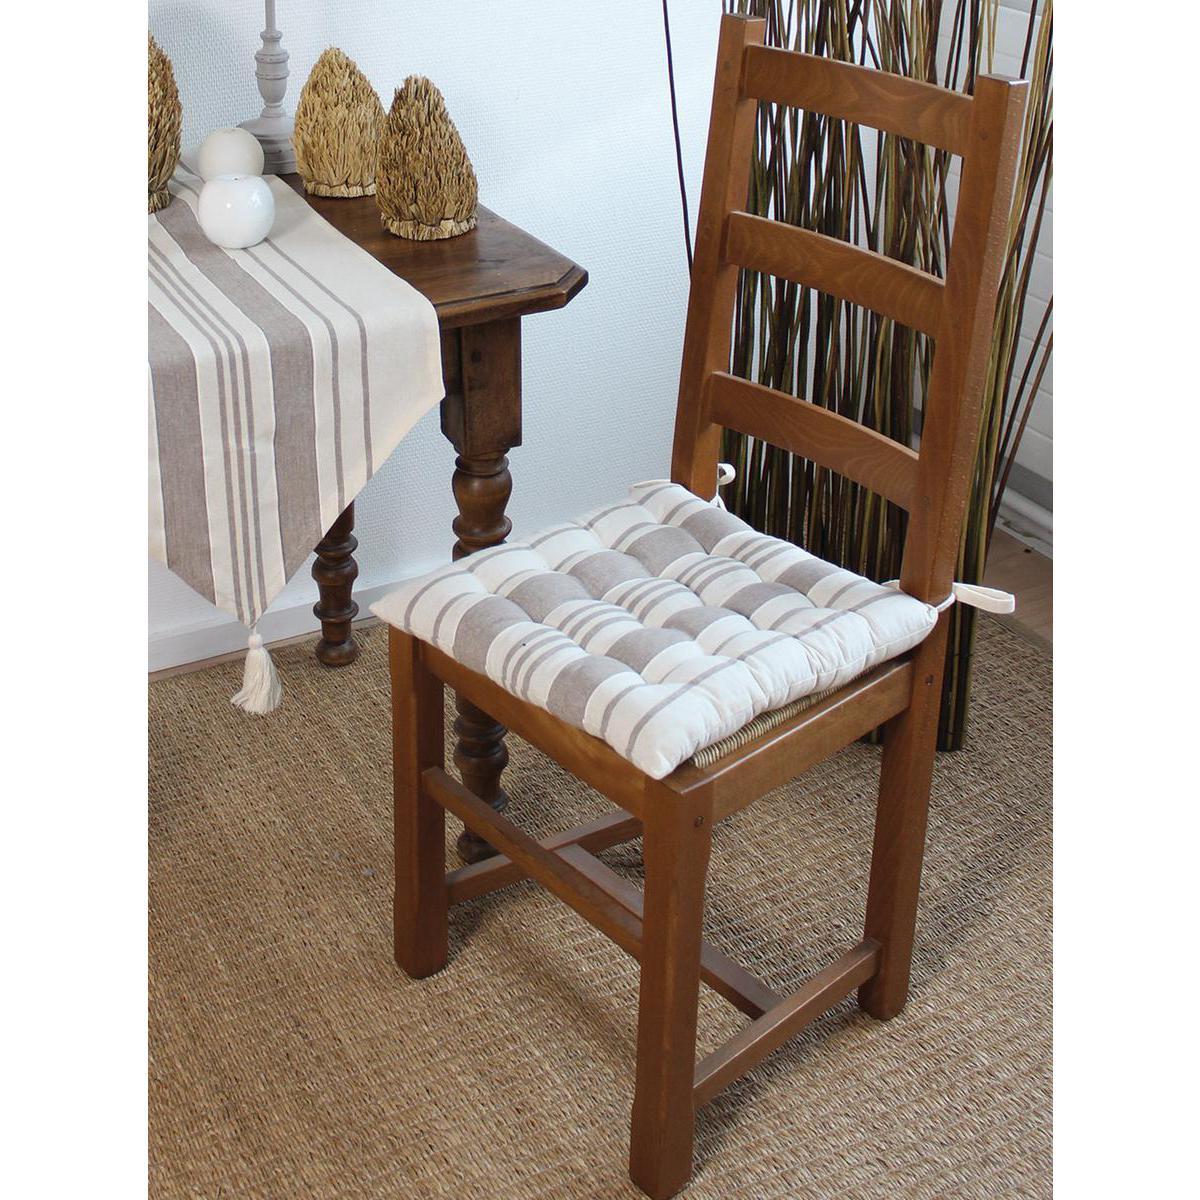 Galette de chaise - 100% polyester - 27 x 31 cm - Beige